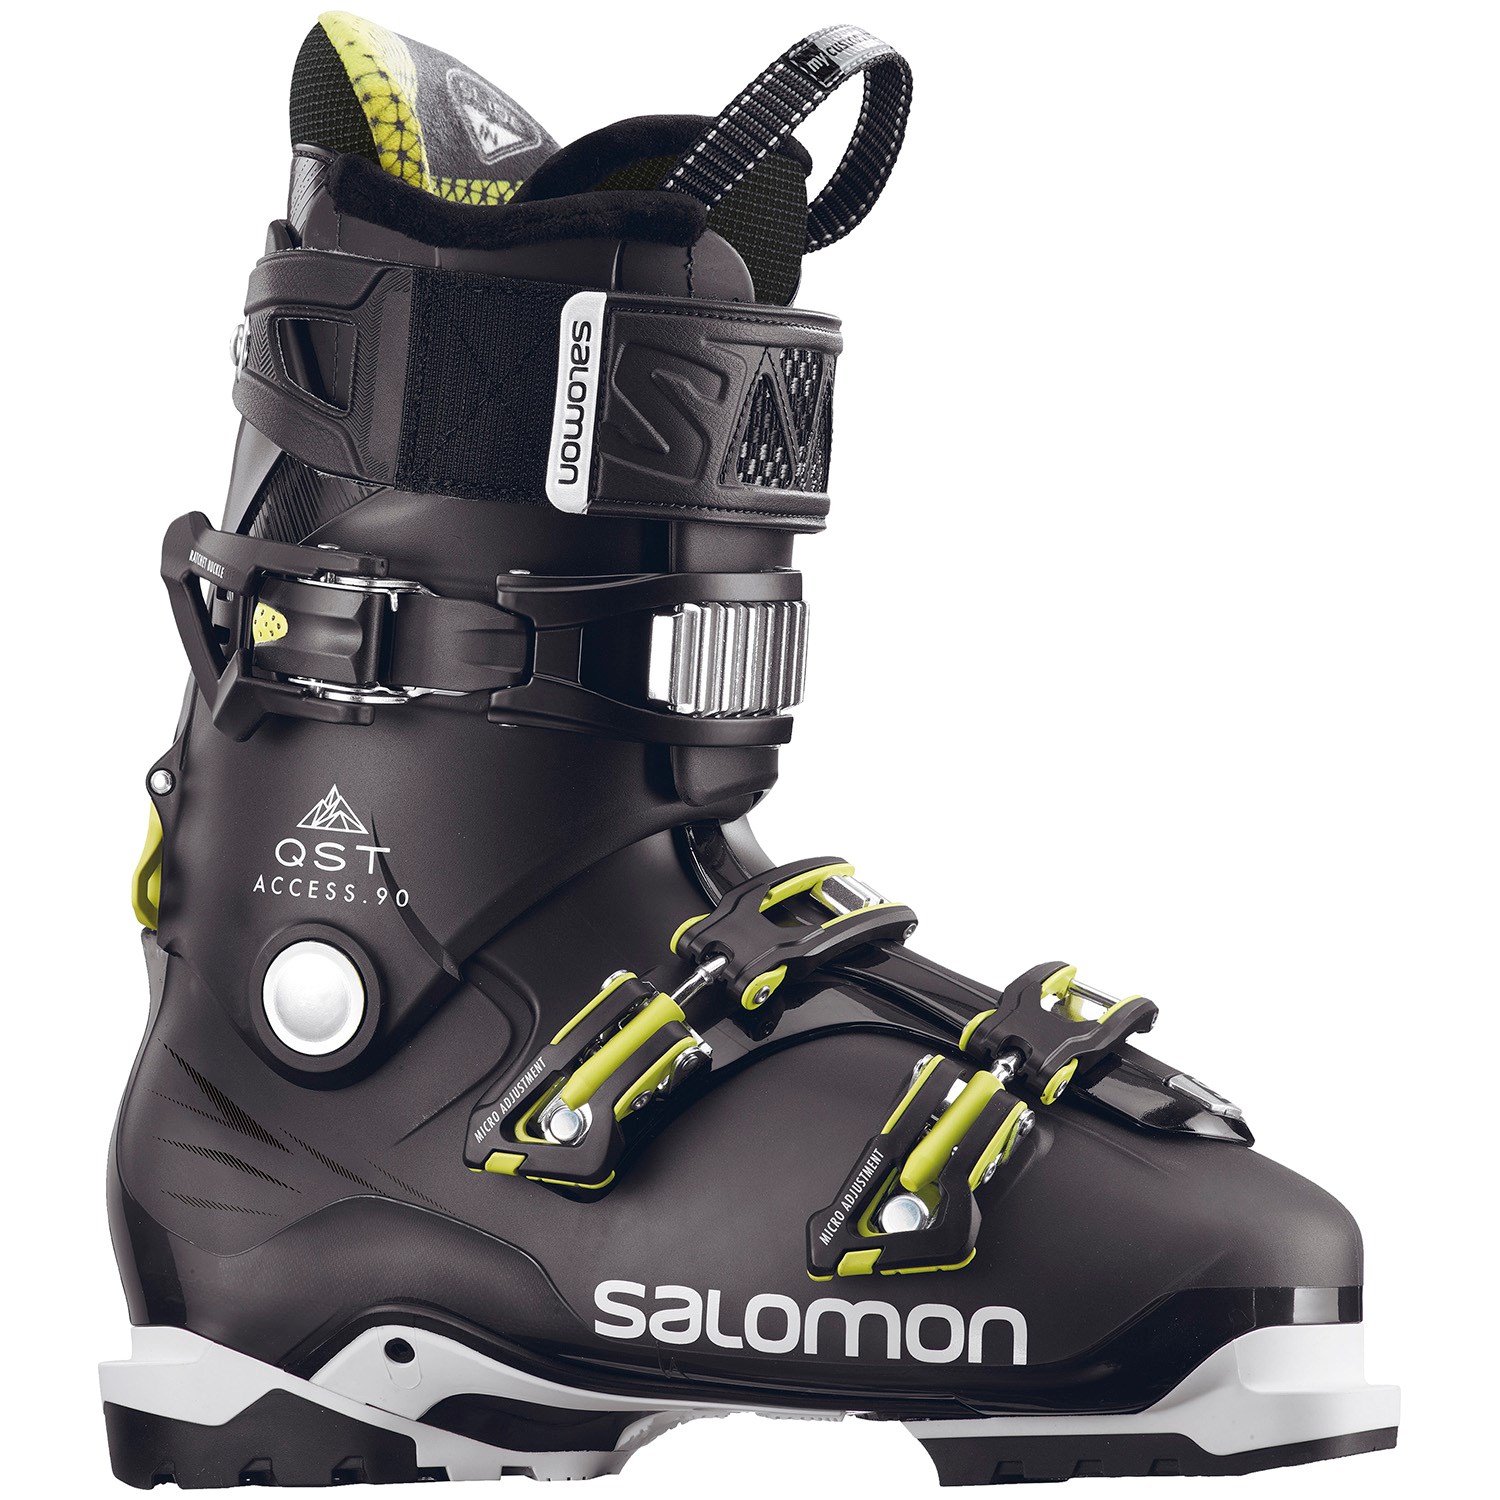 Salomon Qst Access 90 Ski Boots 2018 | evo